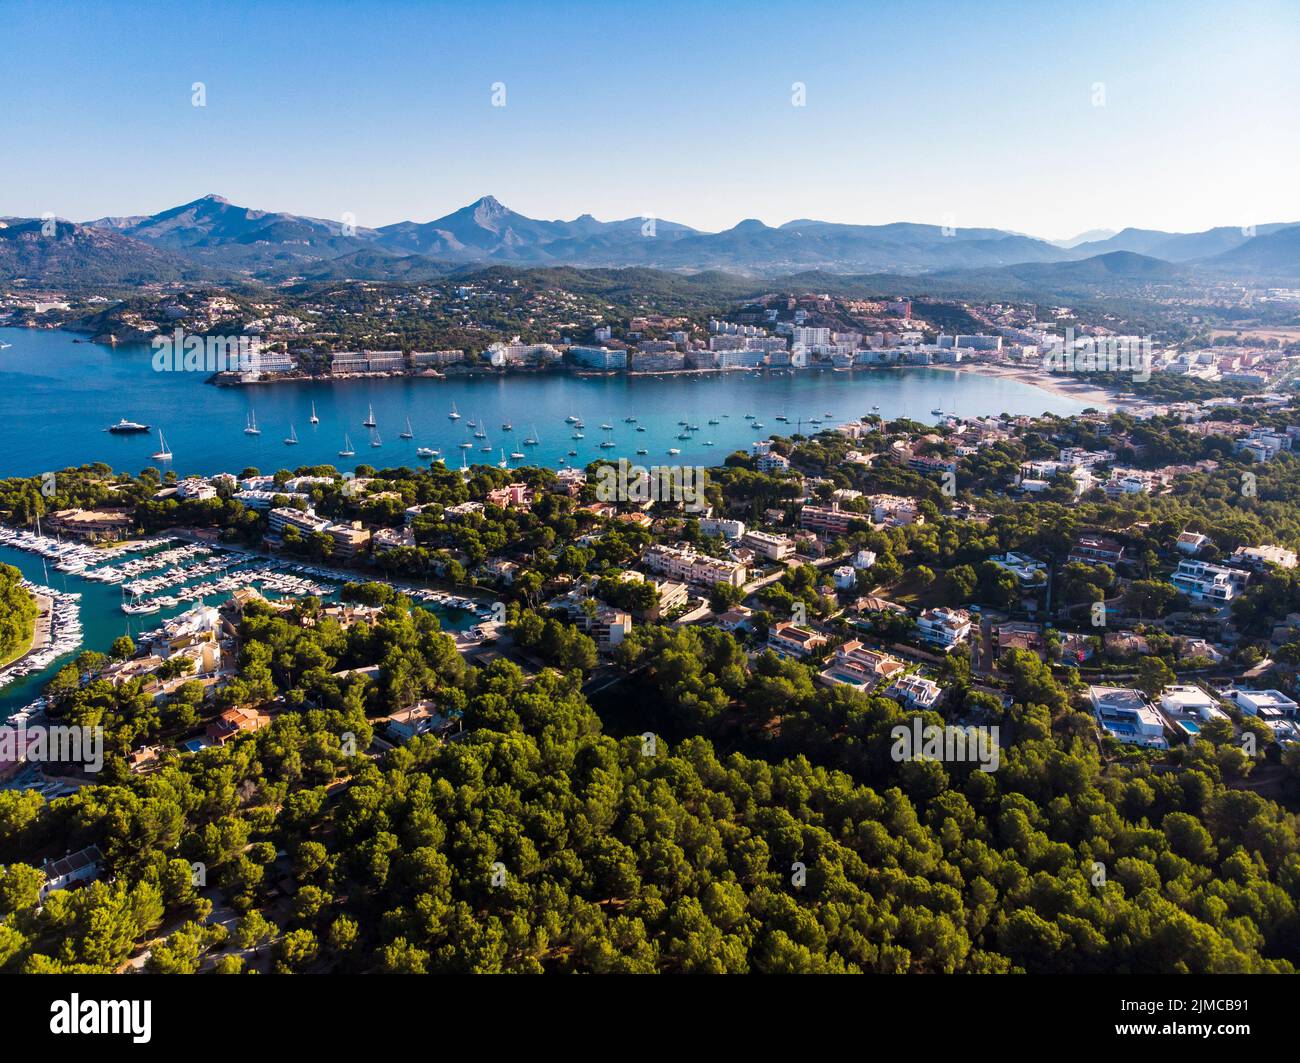 Aerial view of Santa Ponsa and the marina of Santa Ponsa Stock Photo